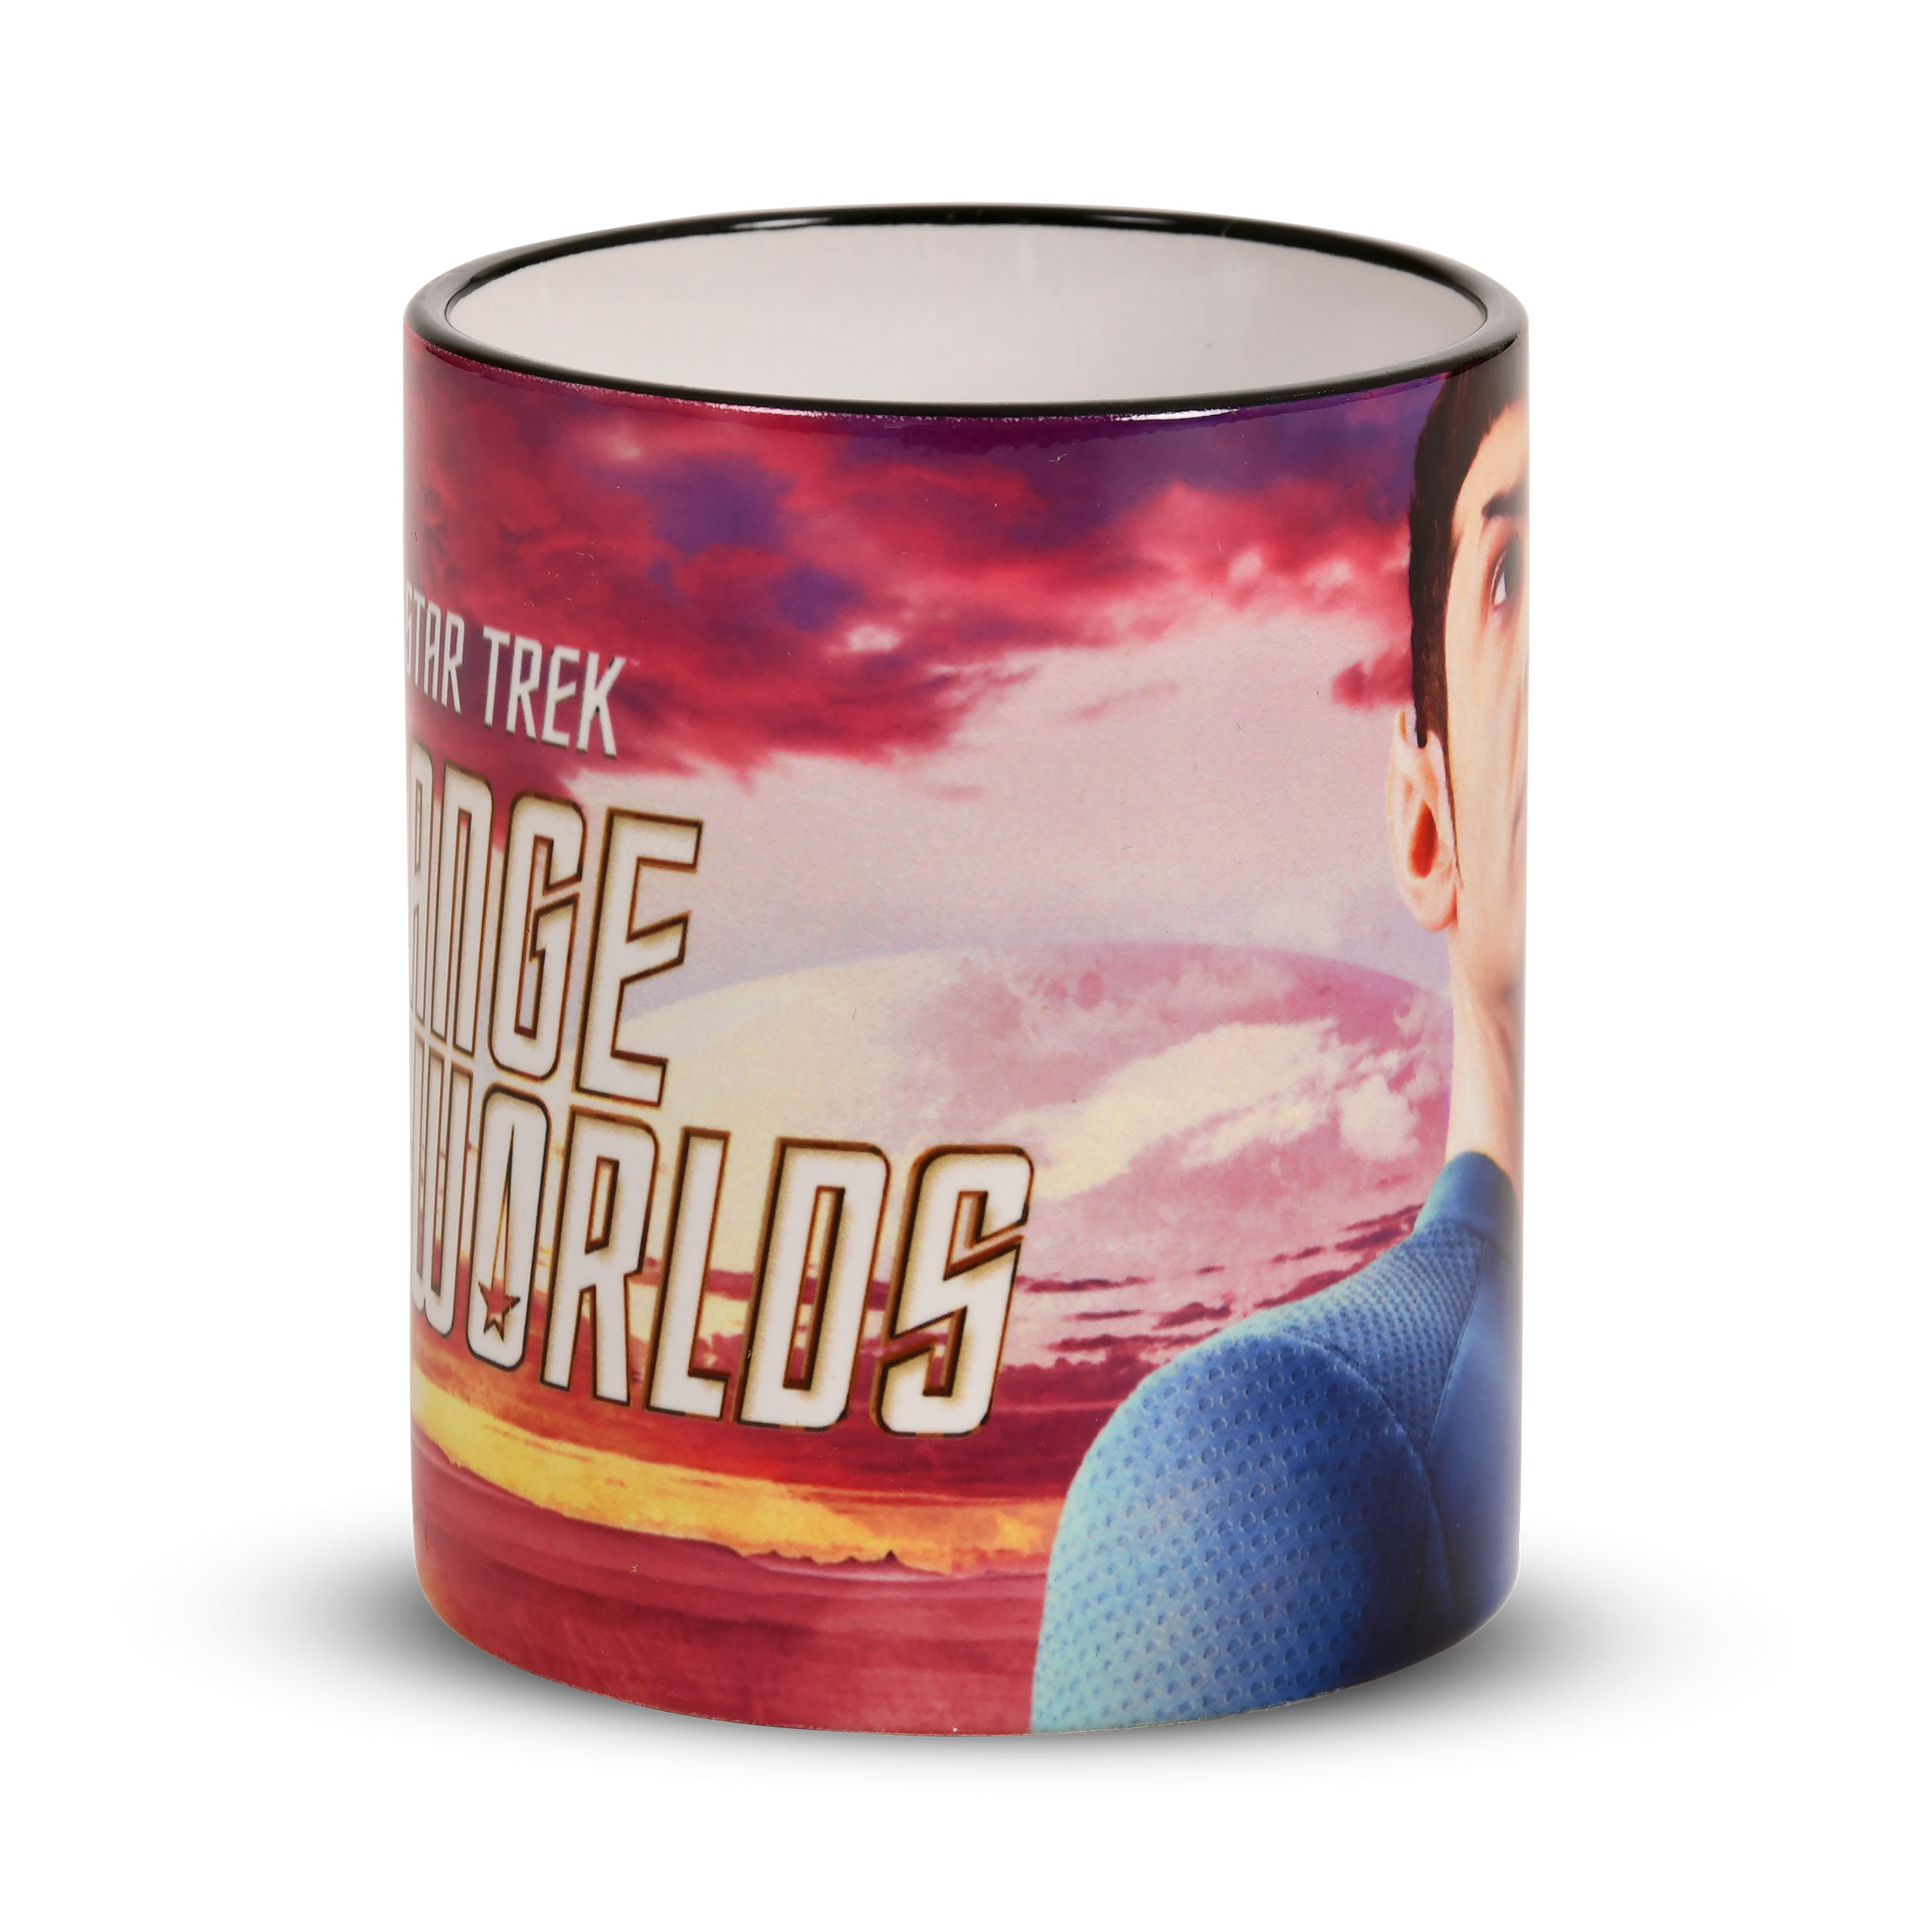 Star Trek: Strange New Worlds - Mister Spock Mug